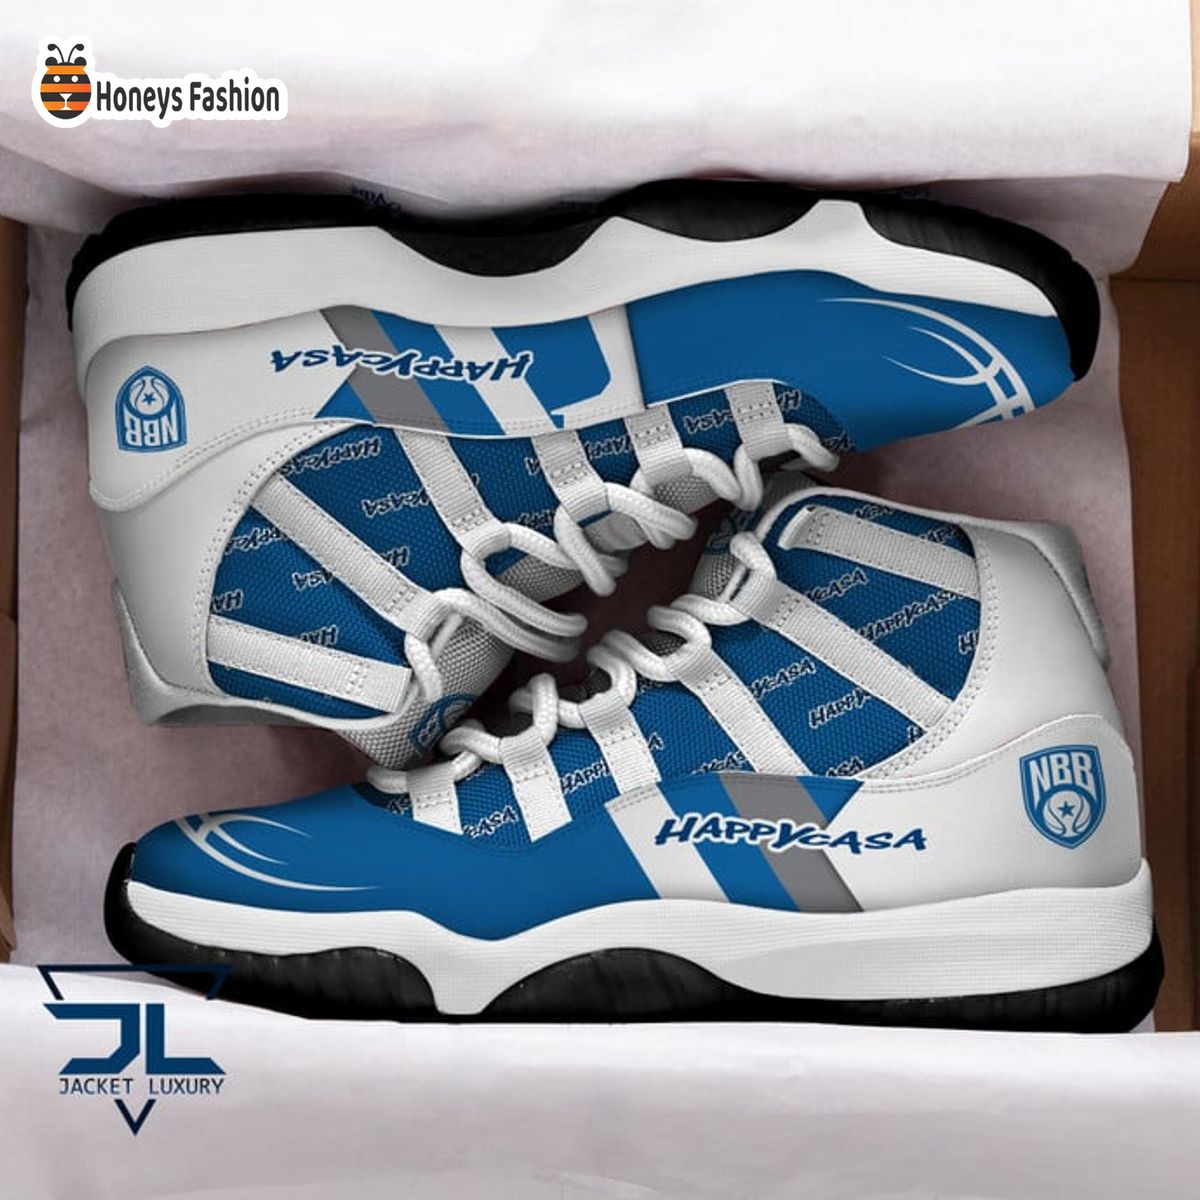 Happy Casa Brindisi Air Jordan 11 Sneaker